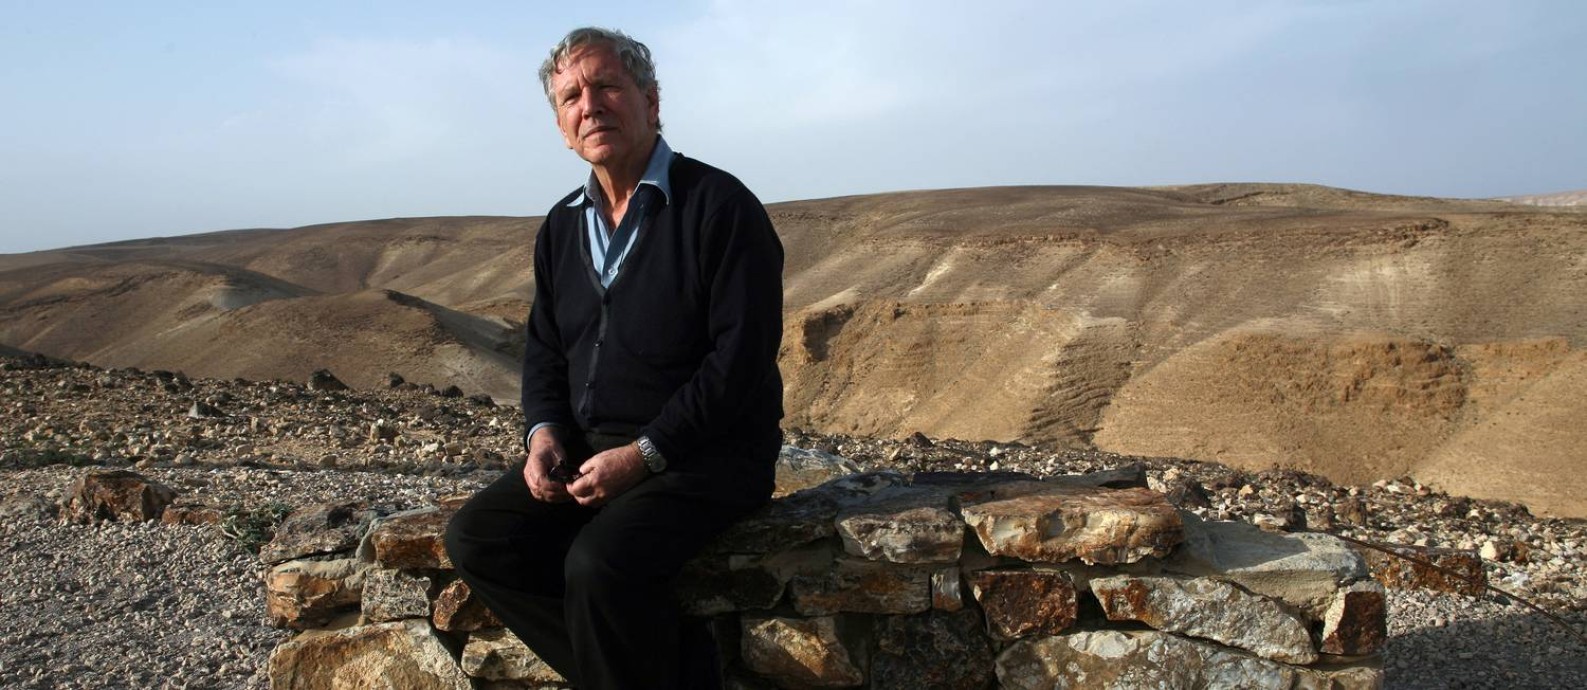 O escritor israelense Amos Oz na cidade de Arad, em Israel, perto do Mar Morto Foto: Rina Castelnuovo / Divulgação